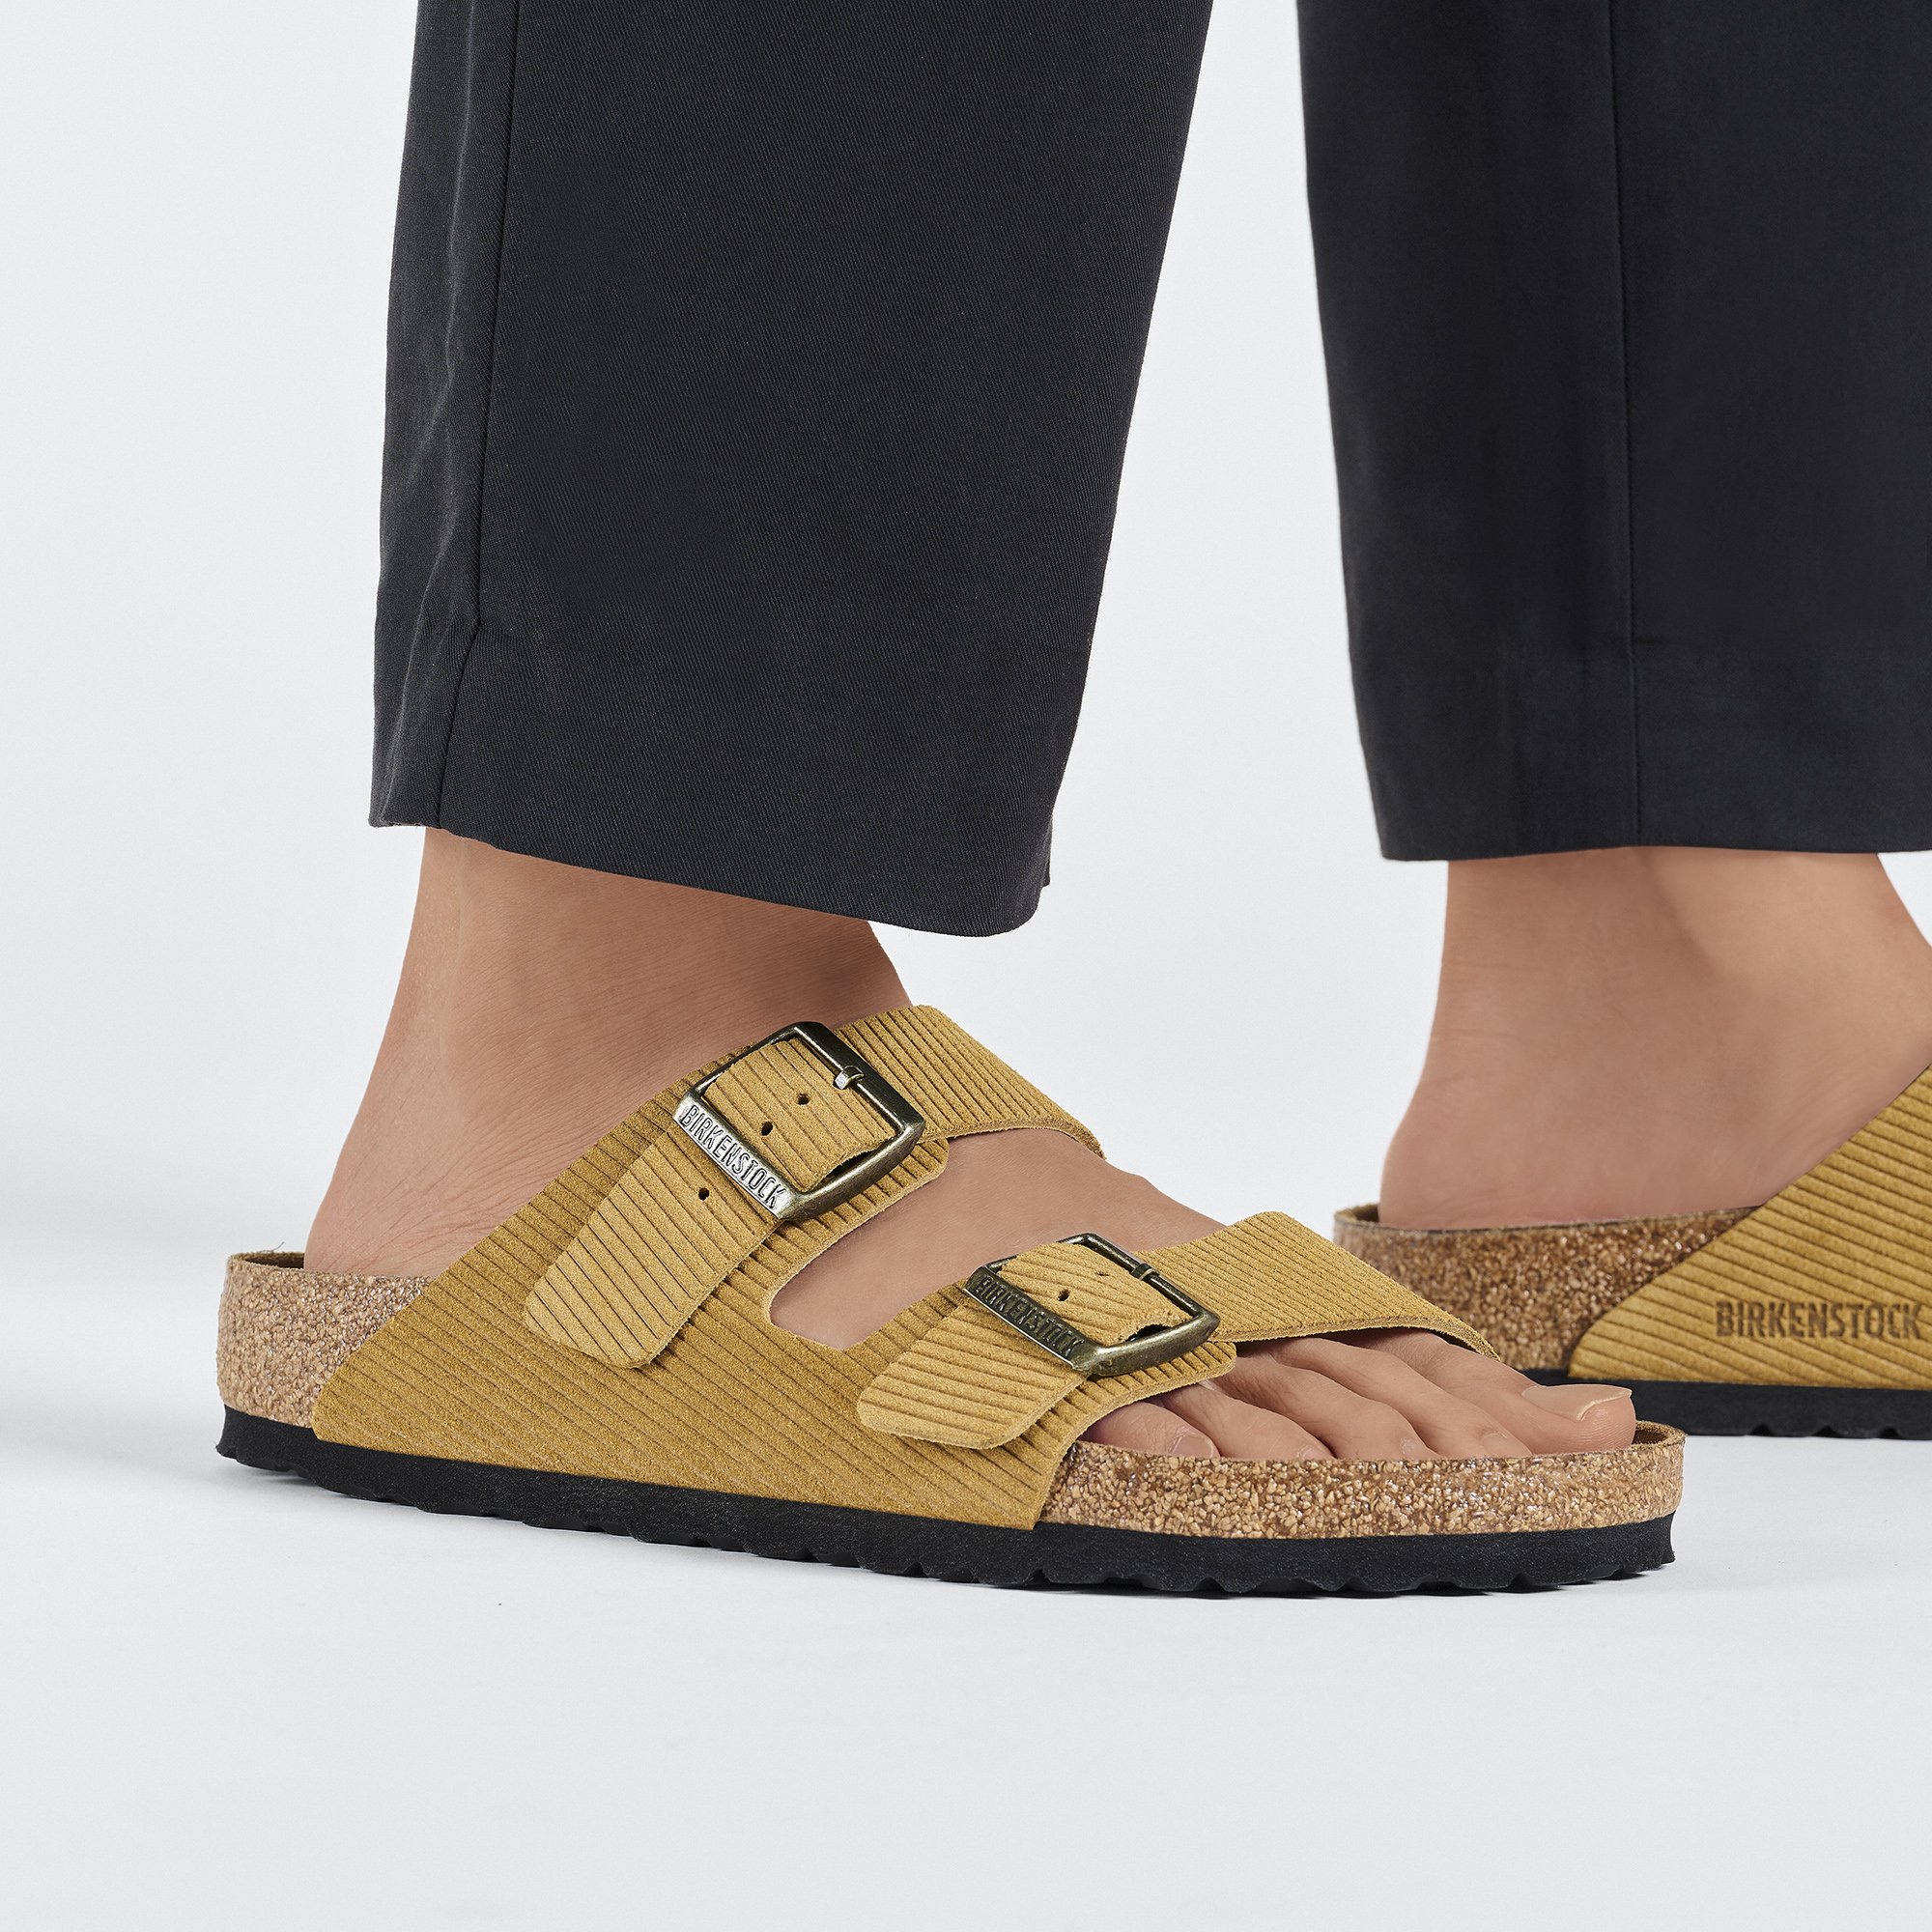 Best Sandals For Wide Feet | POPSUGAR Fashion